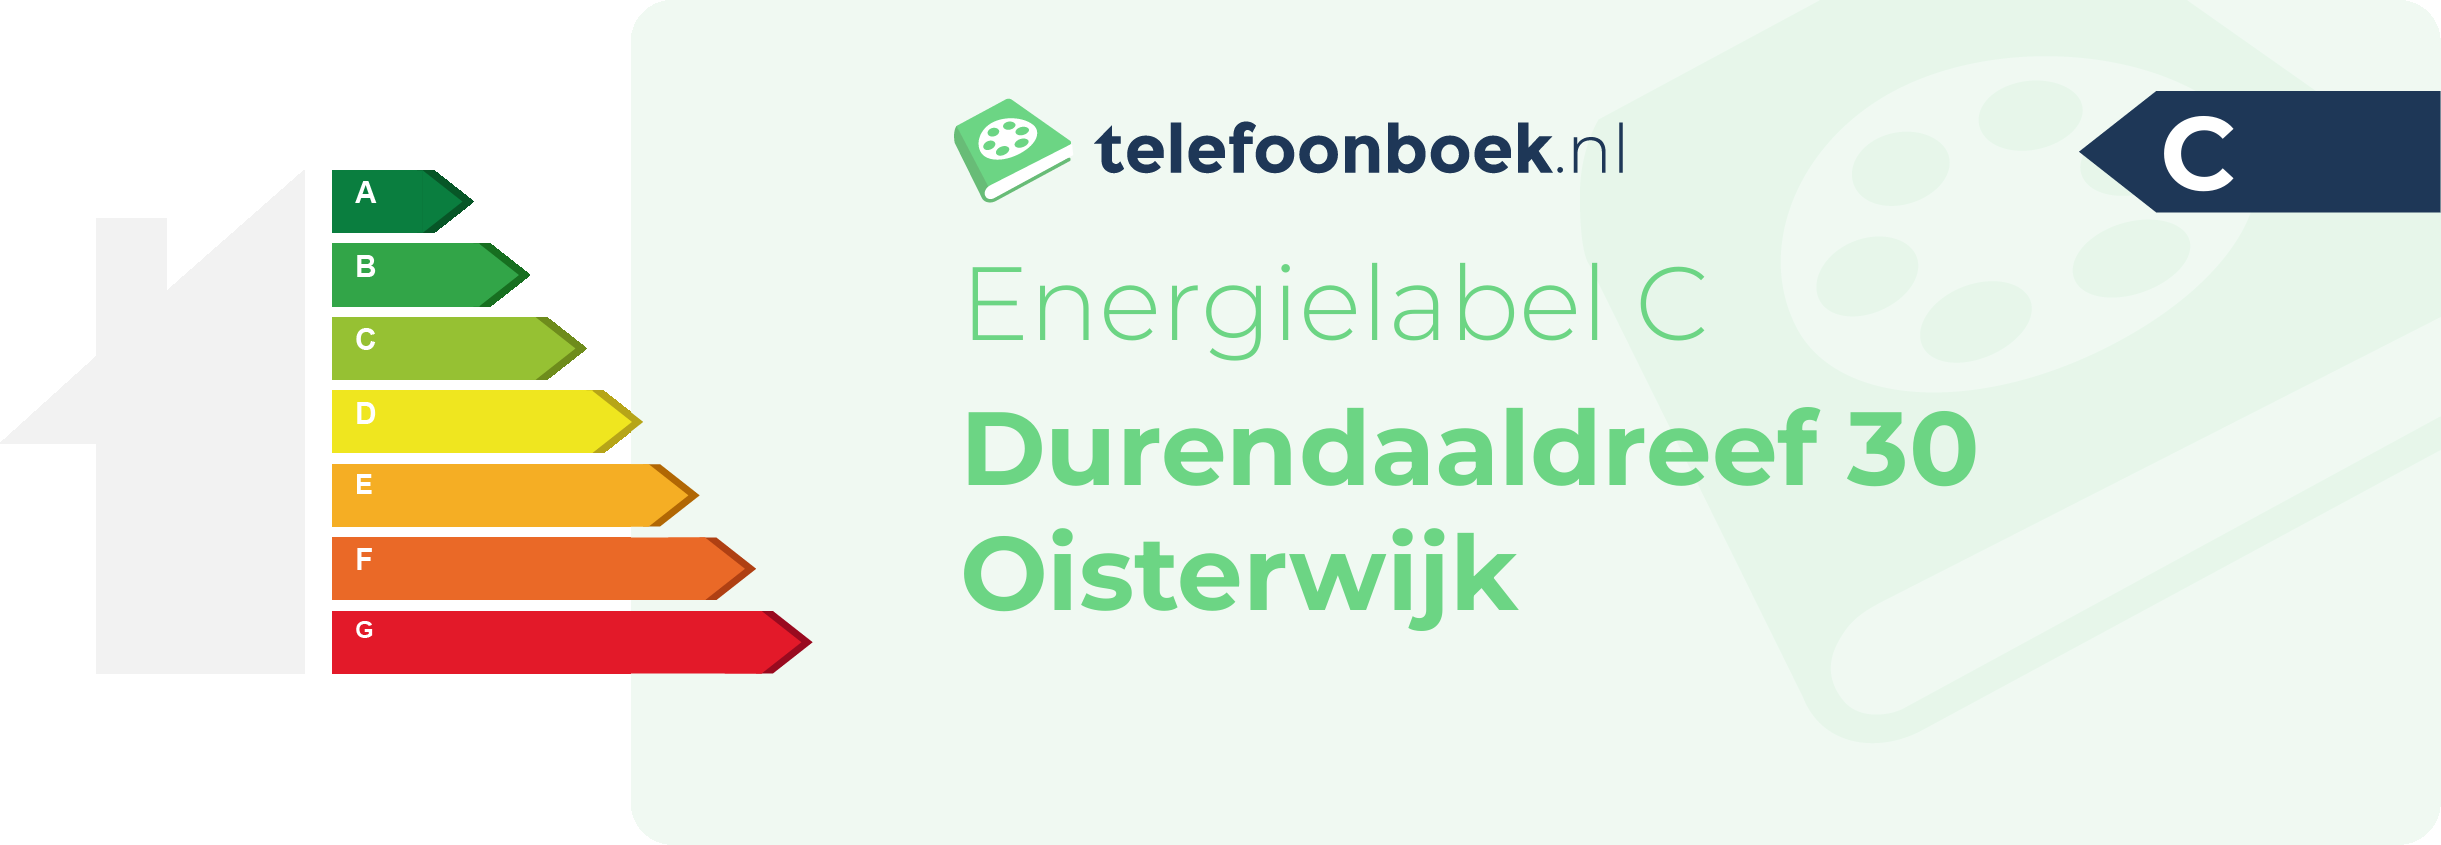 Energielabel Durendaaldreef 30 Oisterwijk